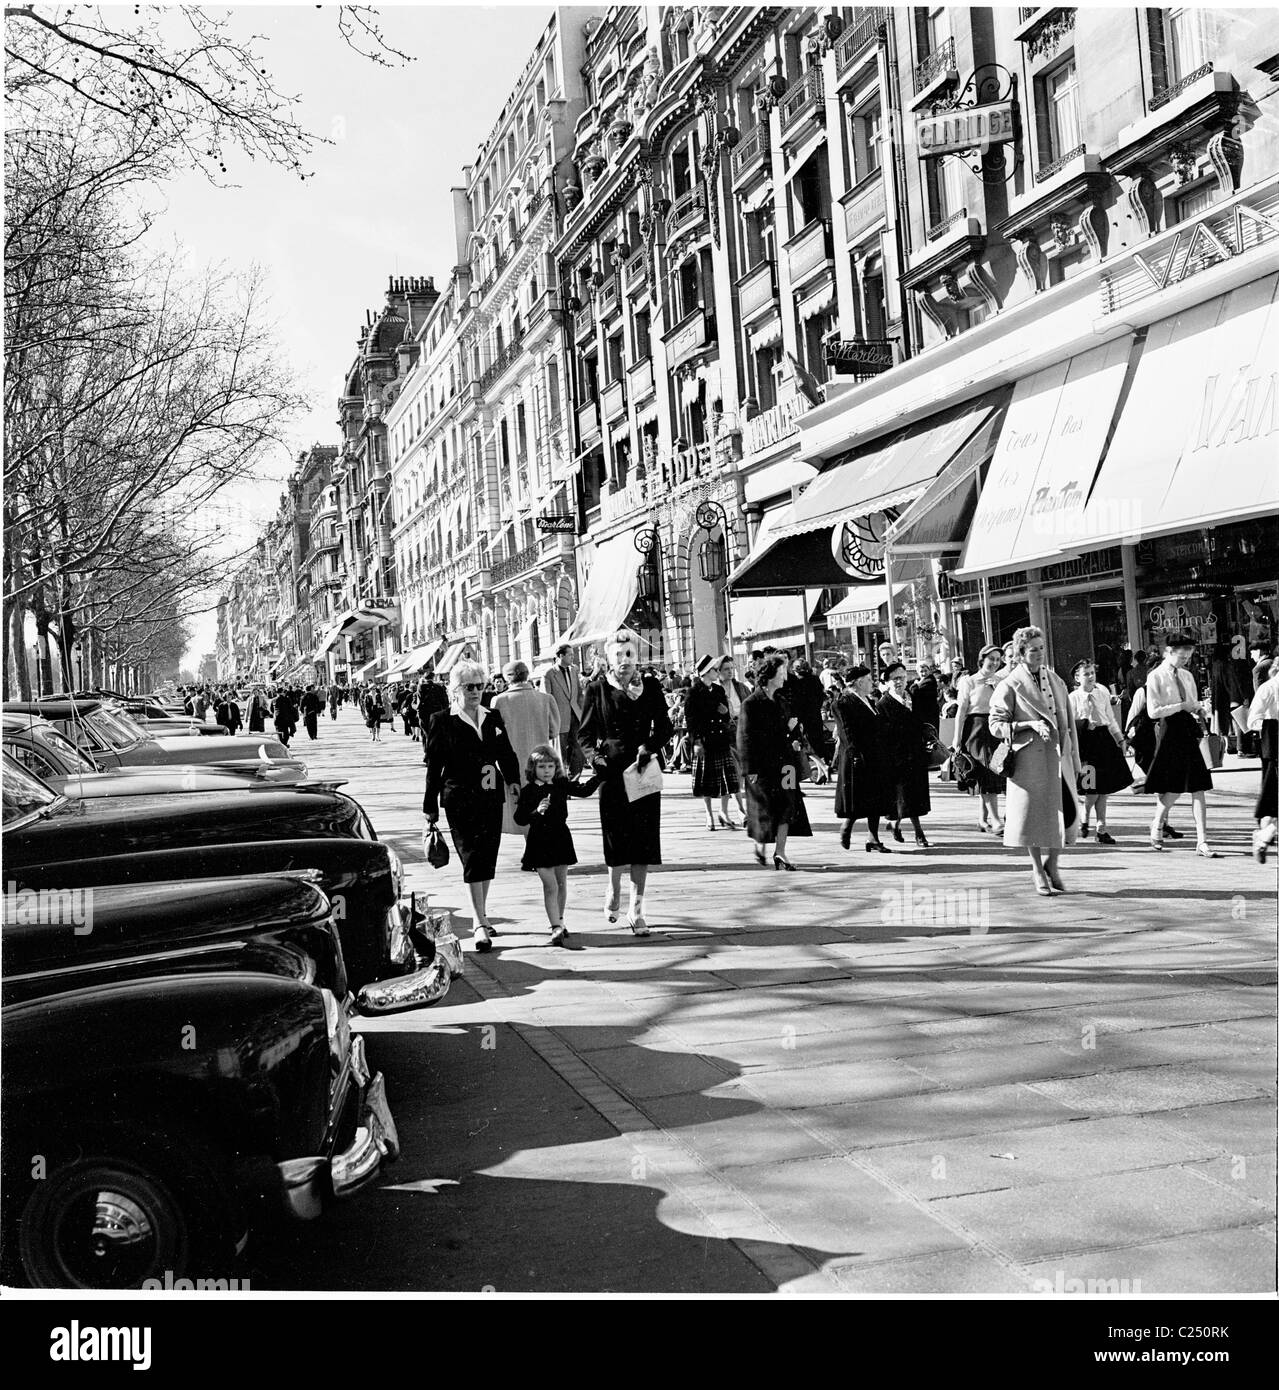 Parigi, Francia, anni '50. I parigini camminano lungo il marciapiede sull'elegante strada fiancheggiata da negozi, gli Champs-Elysees, una delle strade più famose del mondo. Foto Stock